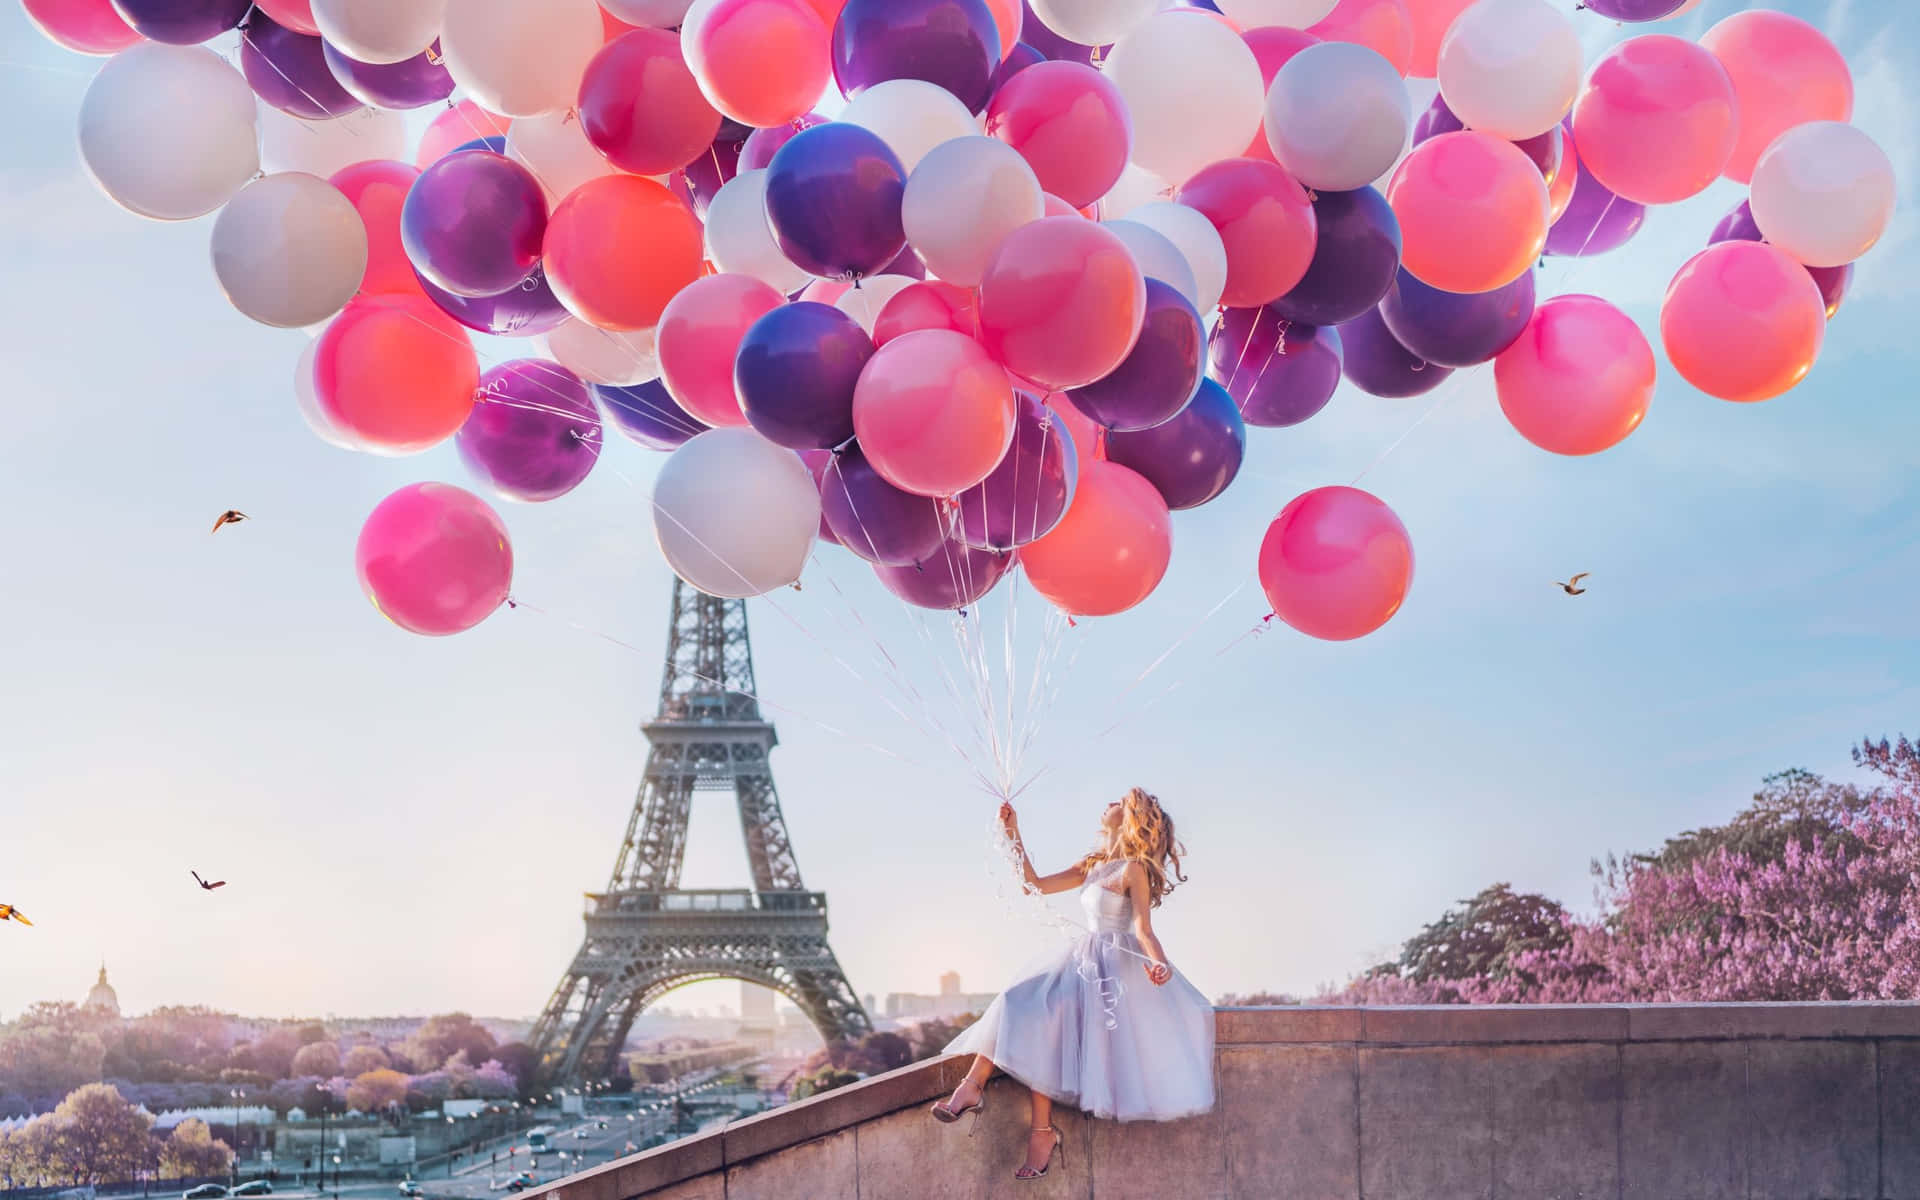 Enkvinna Håller Ballonger Framför Eiffeltornet.